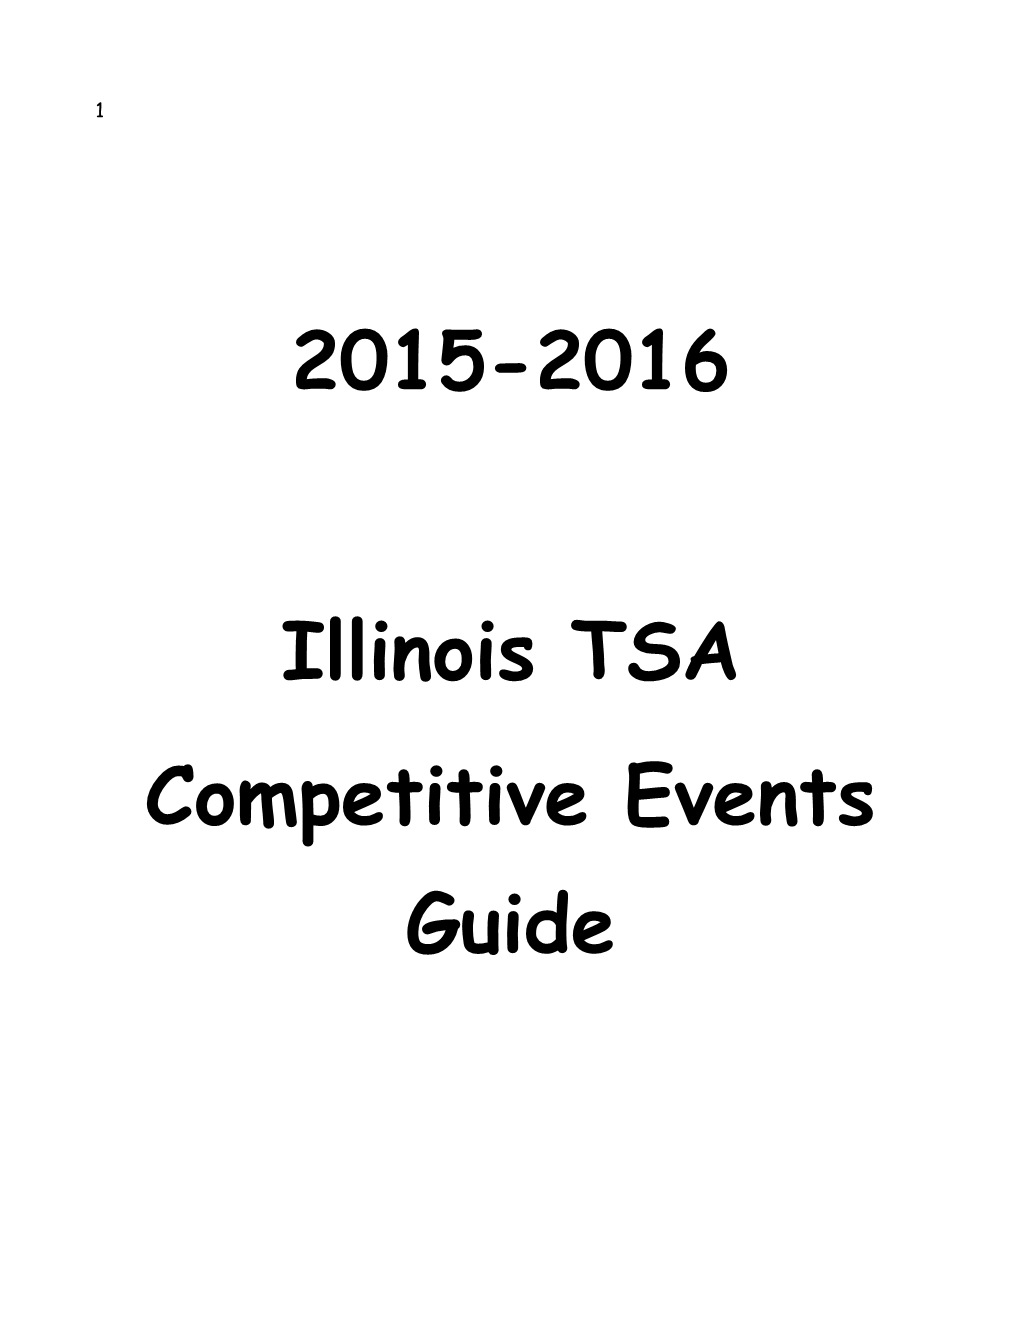 C:Tsaevents007 Comp. Events Guide.Wpd